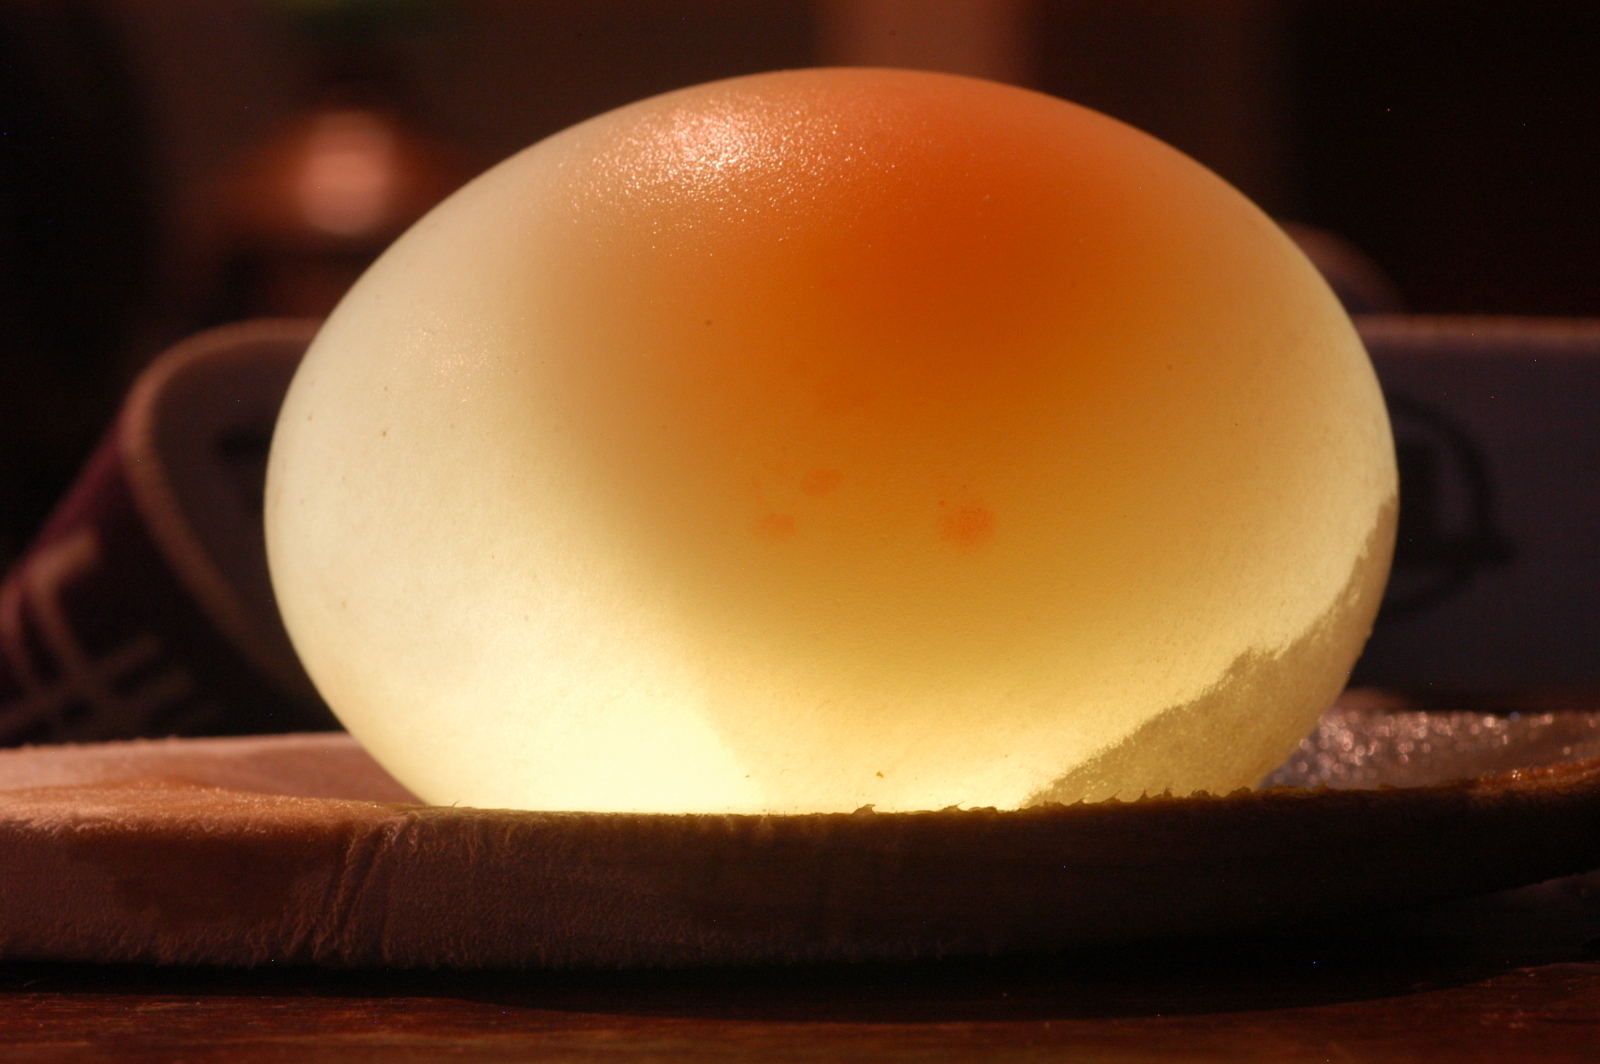 Naked egg